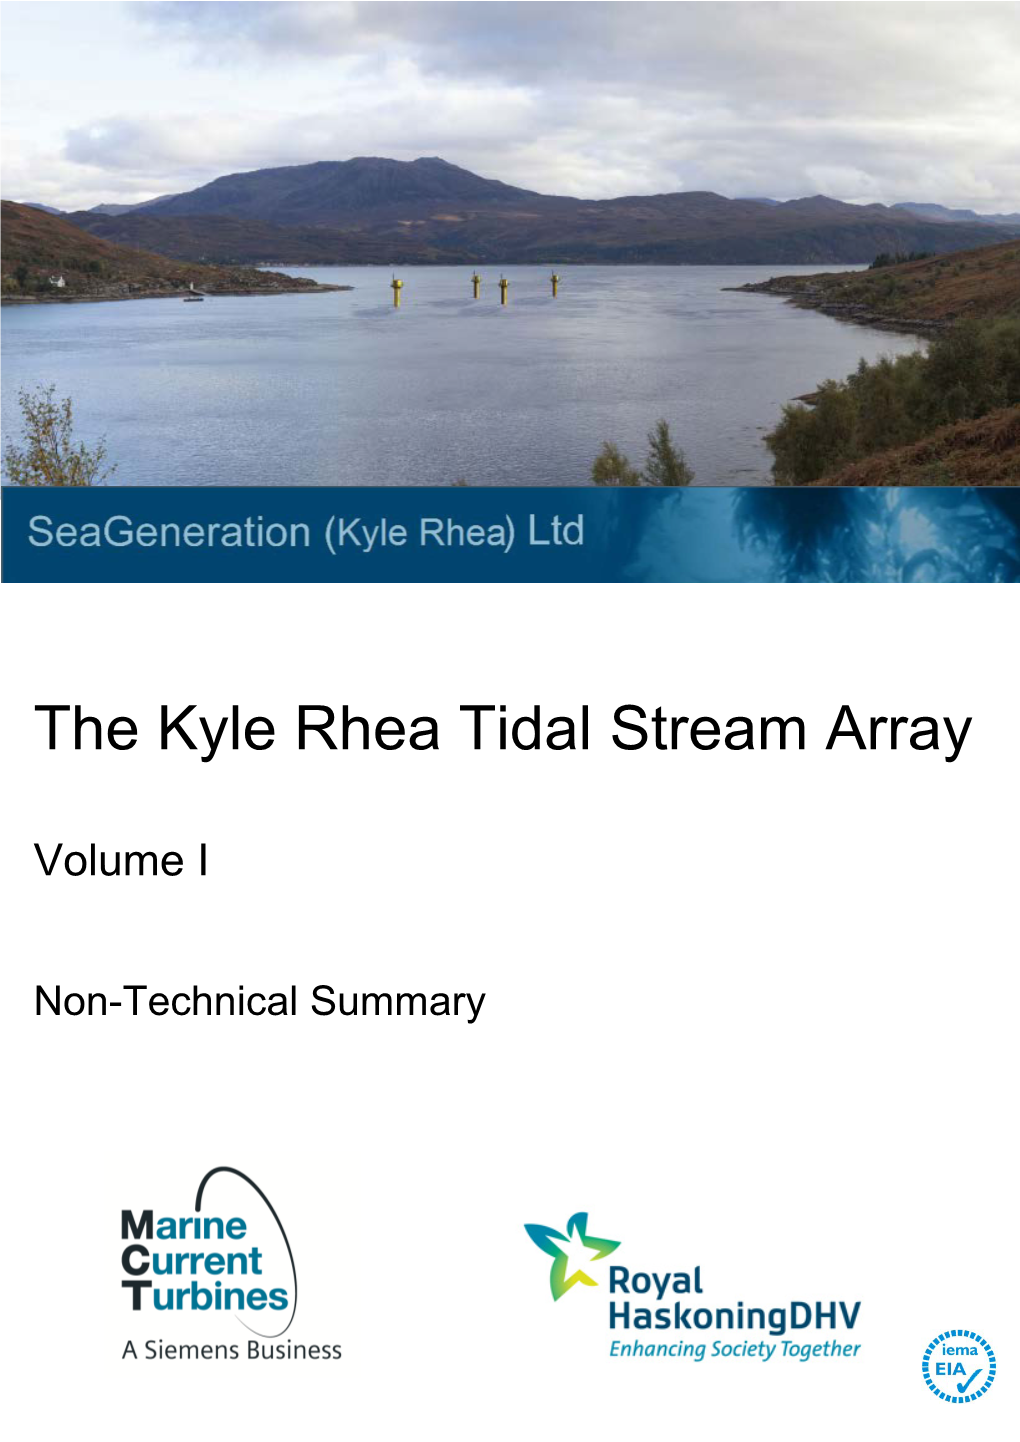 The Kyle Rhea Tidal Stream Array